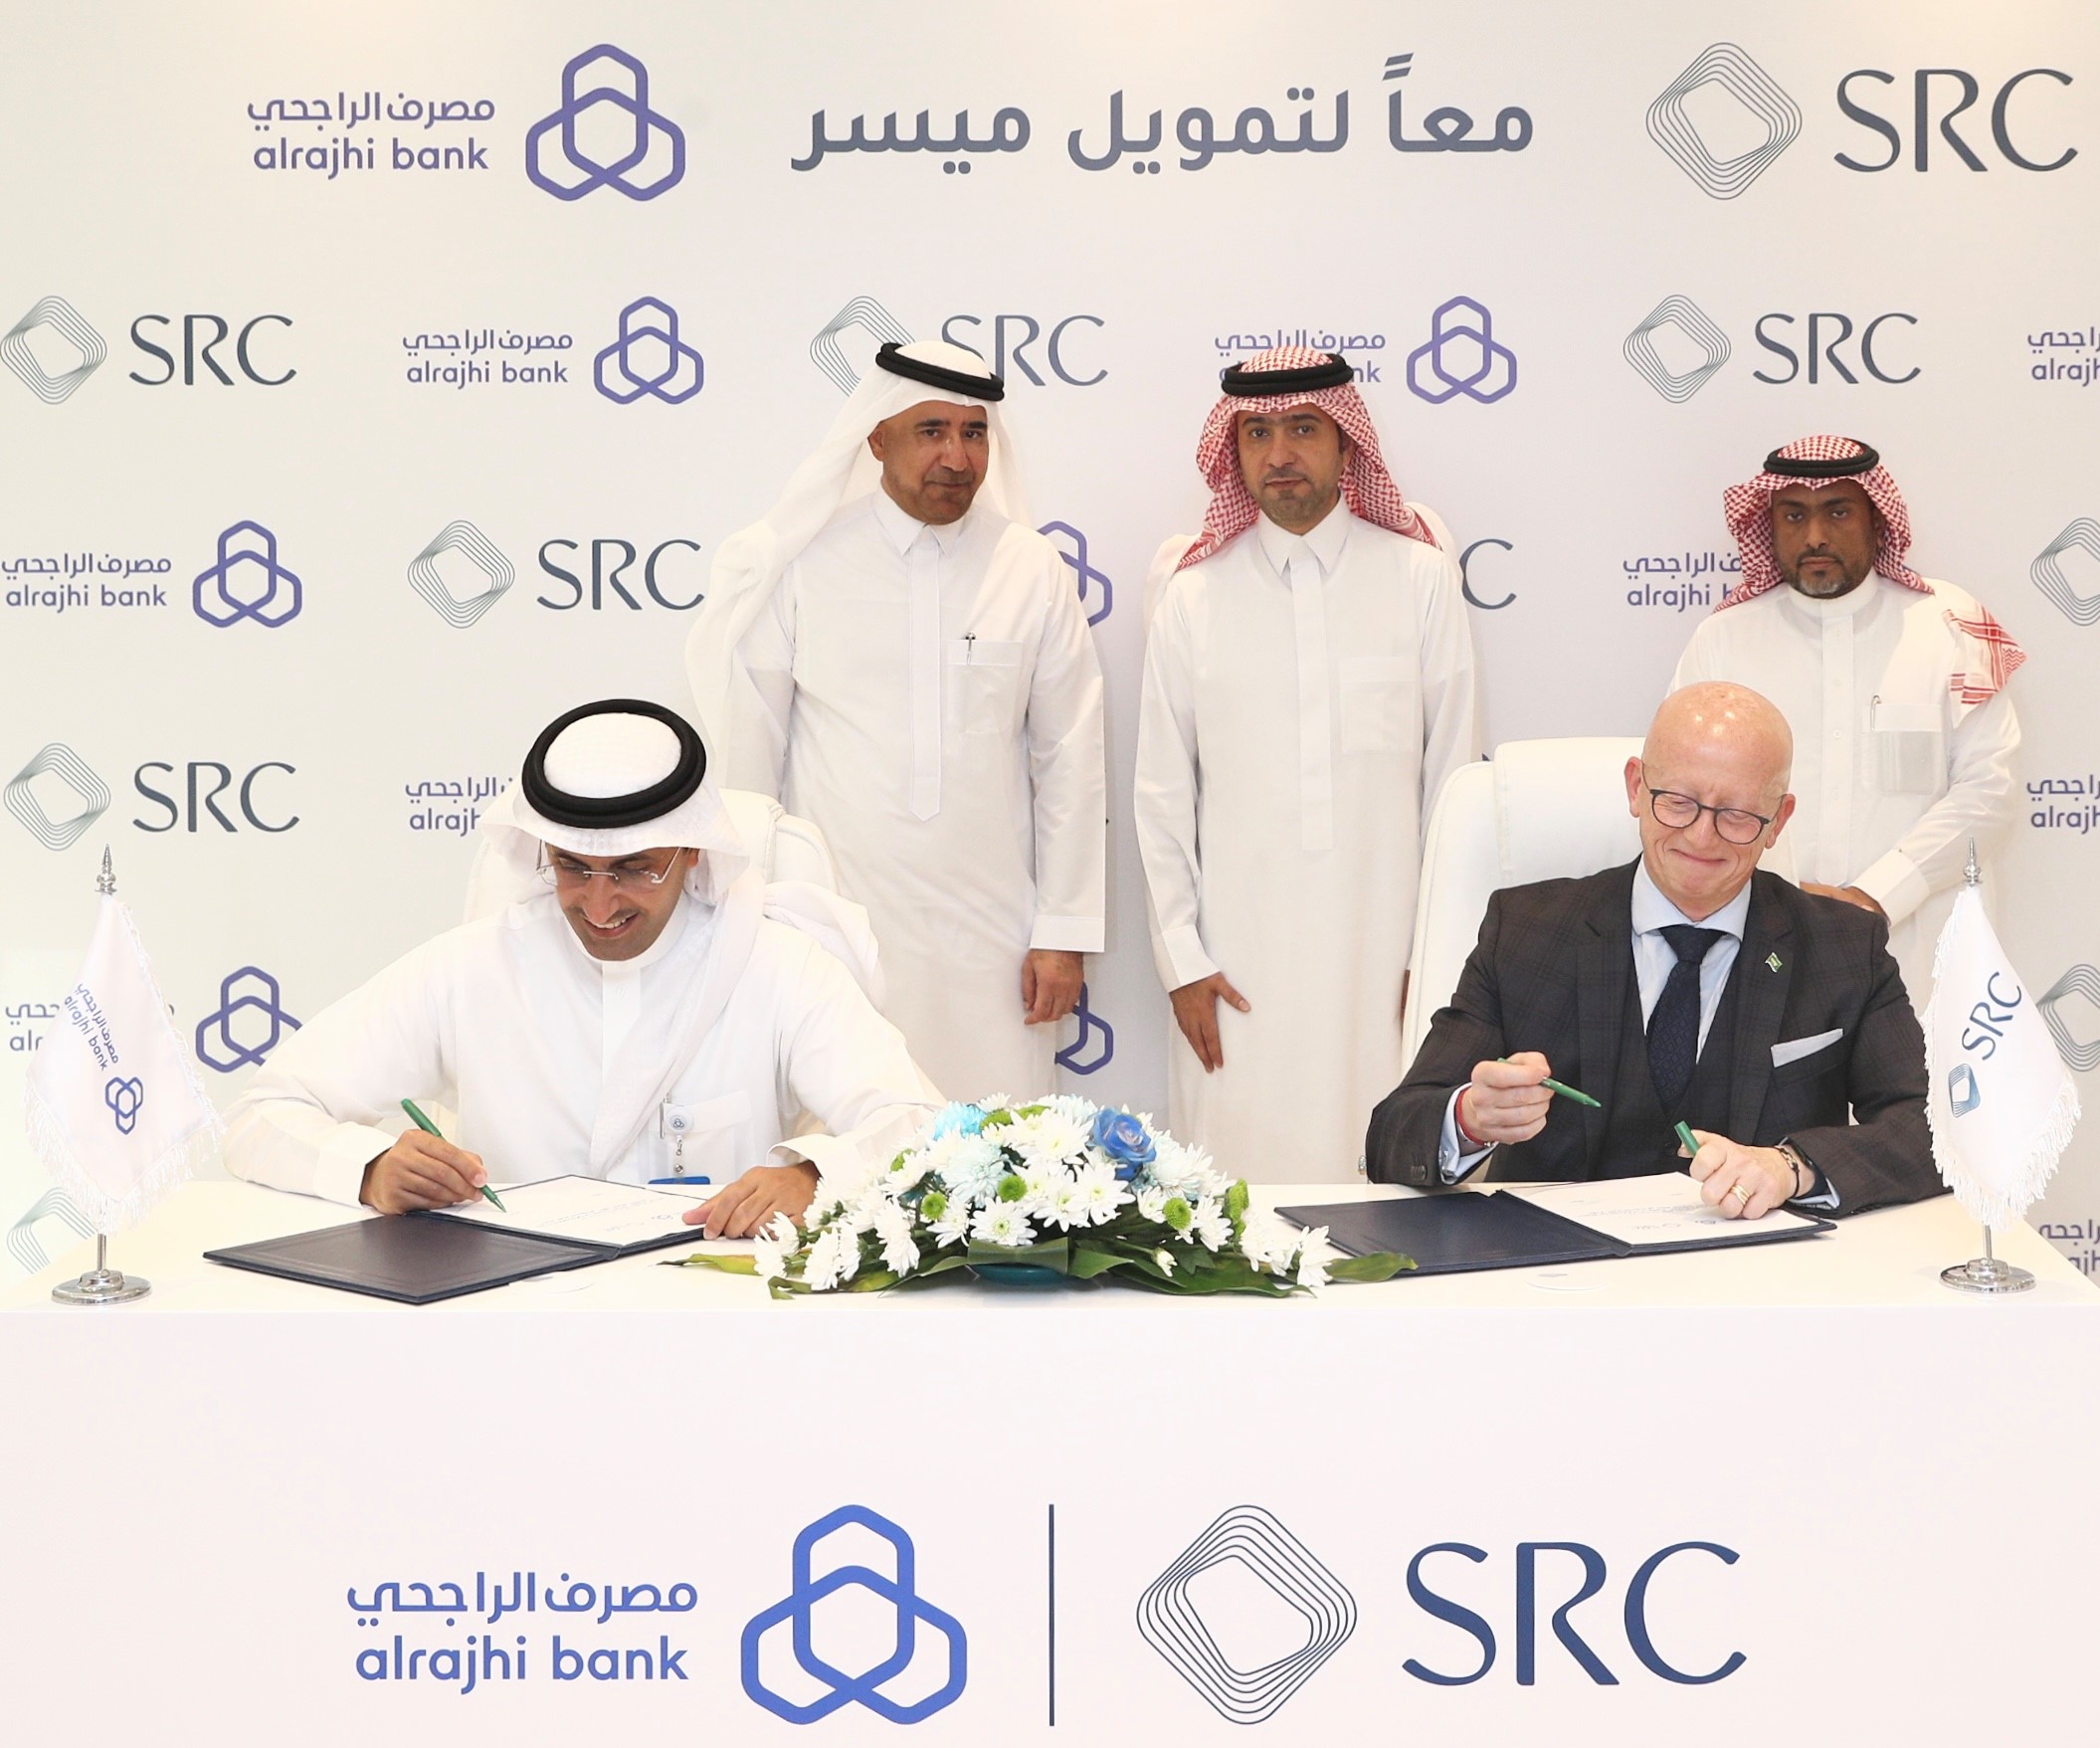 السعودية لإعادة التمويل العقاري"SRC" تُوقع أكبر اتفاقية شراء محفظة مع "مصرف الراجحي"  بـ 5 مليار ريال سعودي